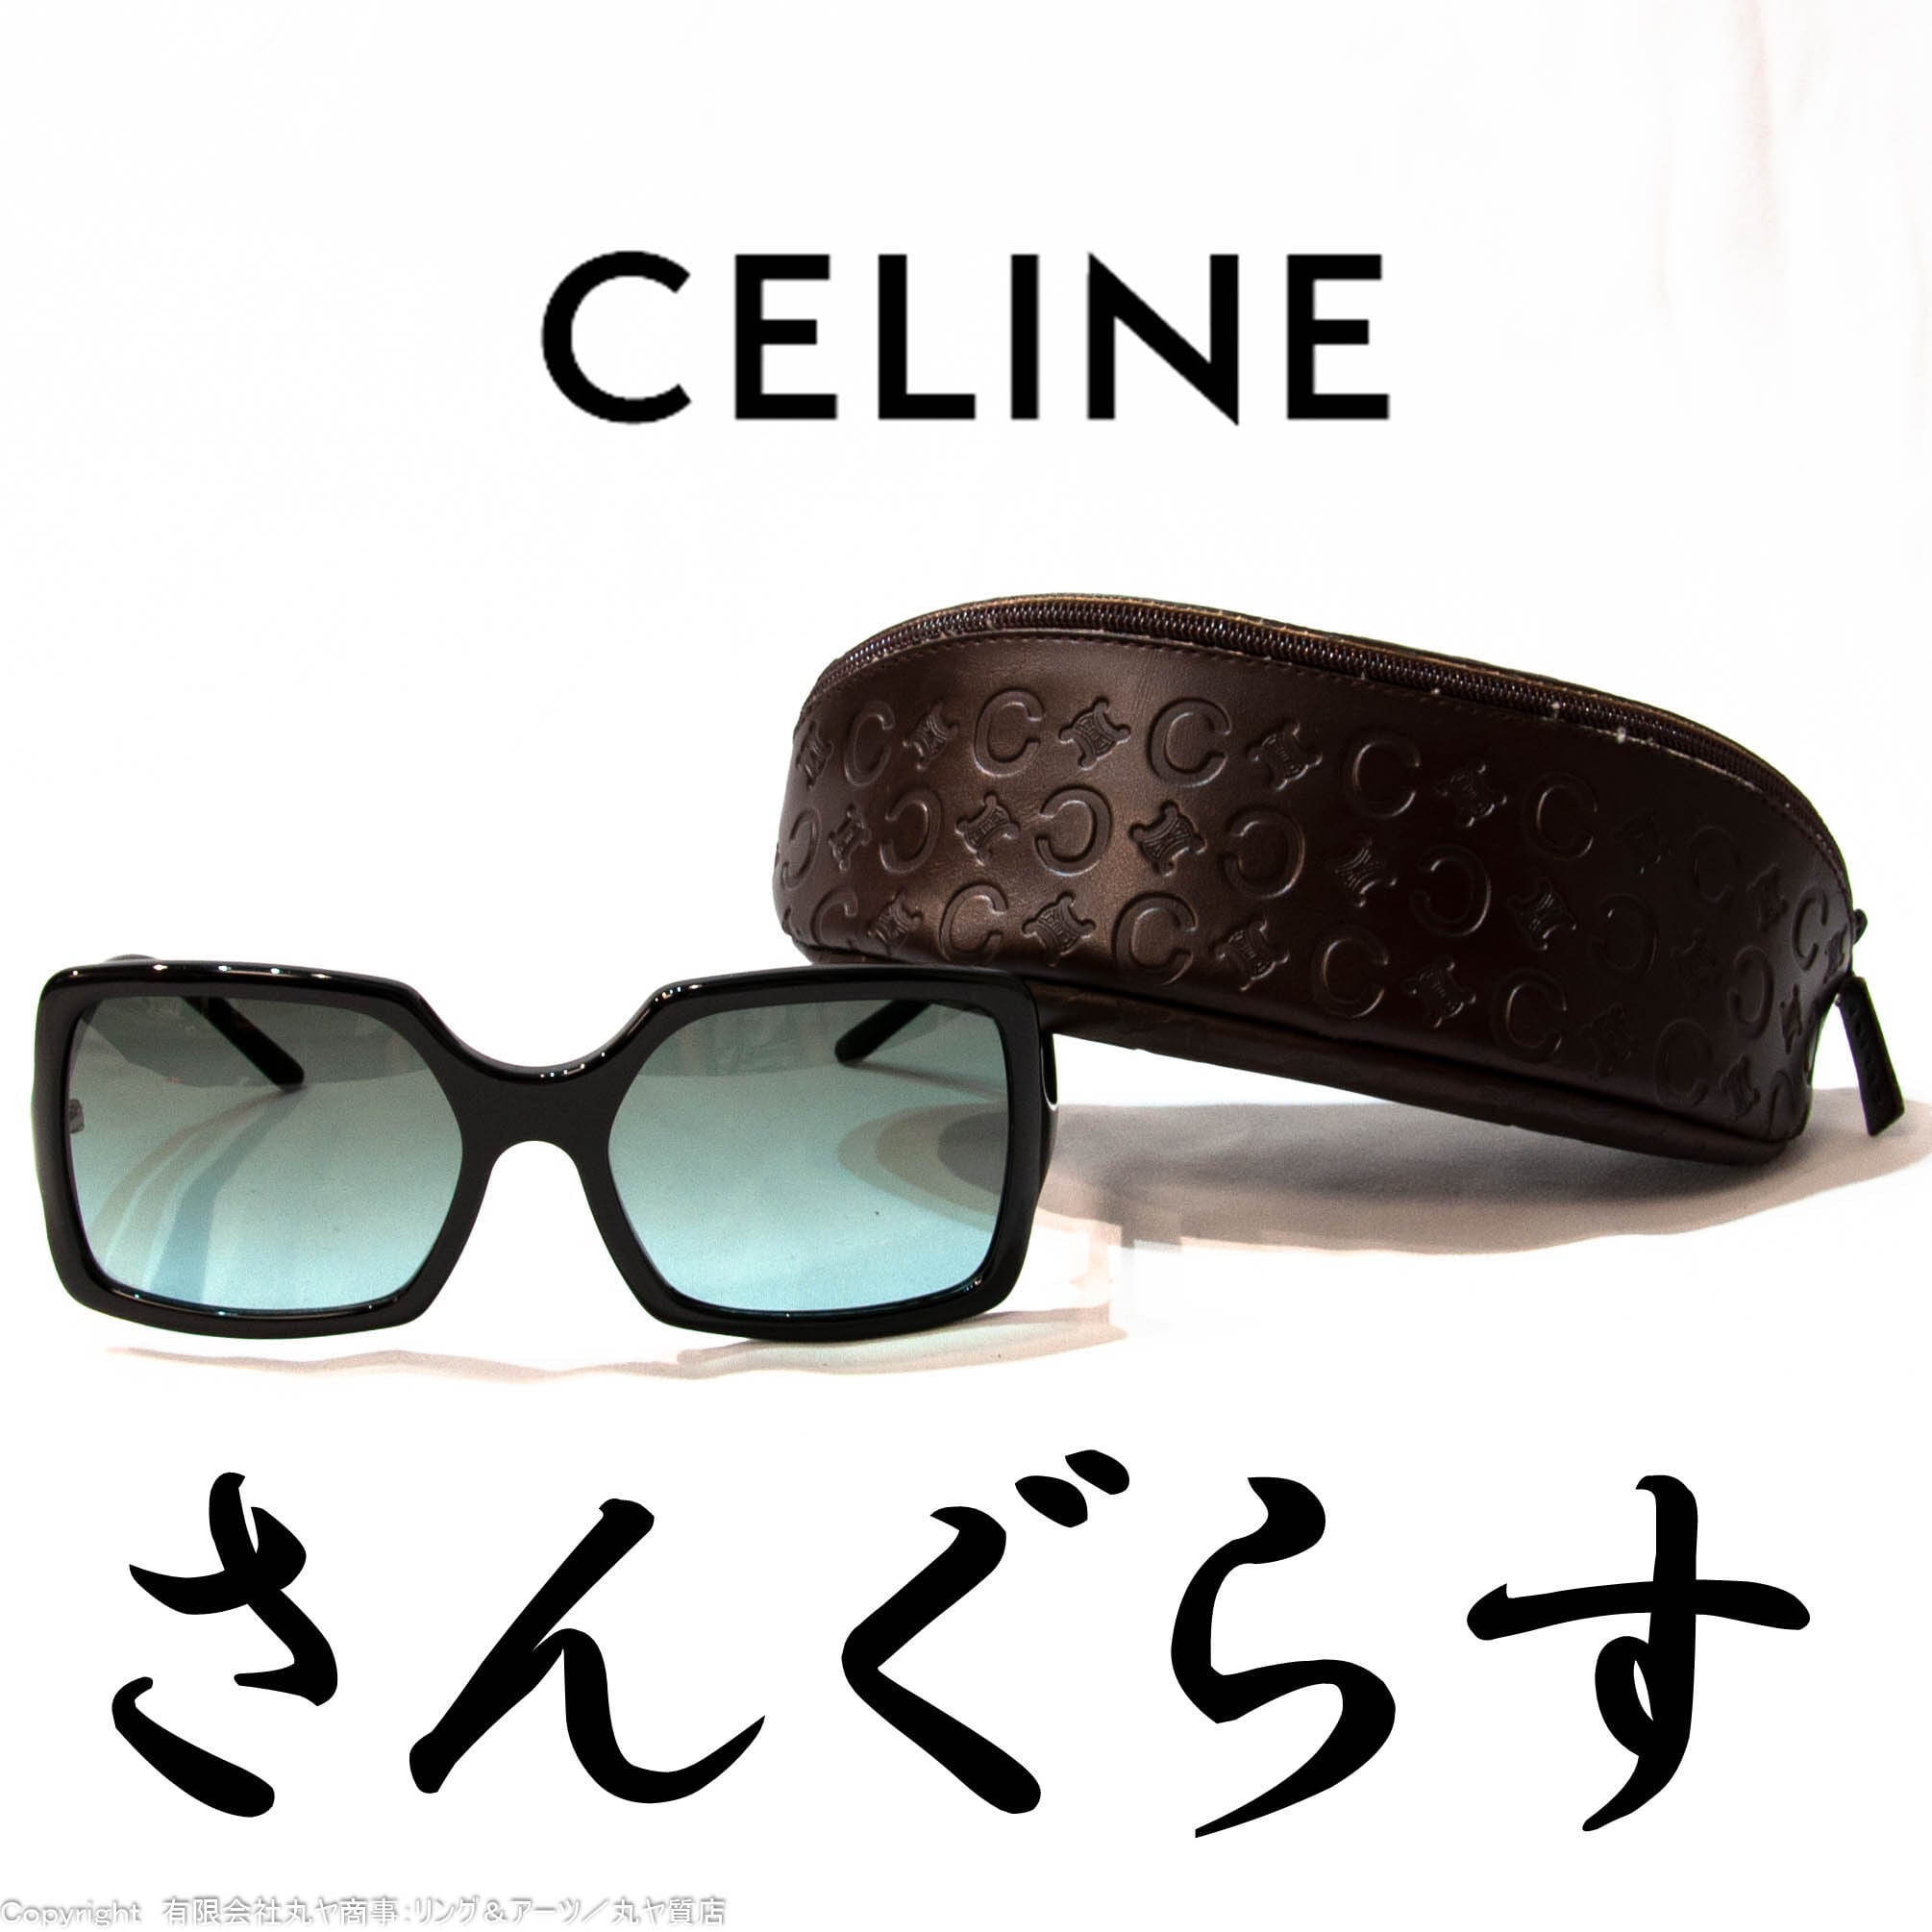 セリーヌ:黒セルフレームサングラス/SC1523型/COL.700色/Celine/Céline